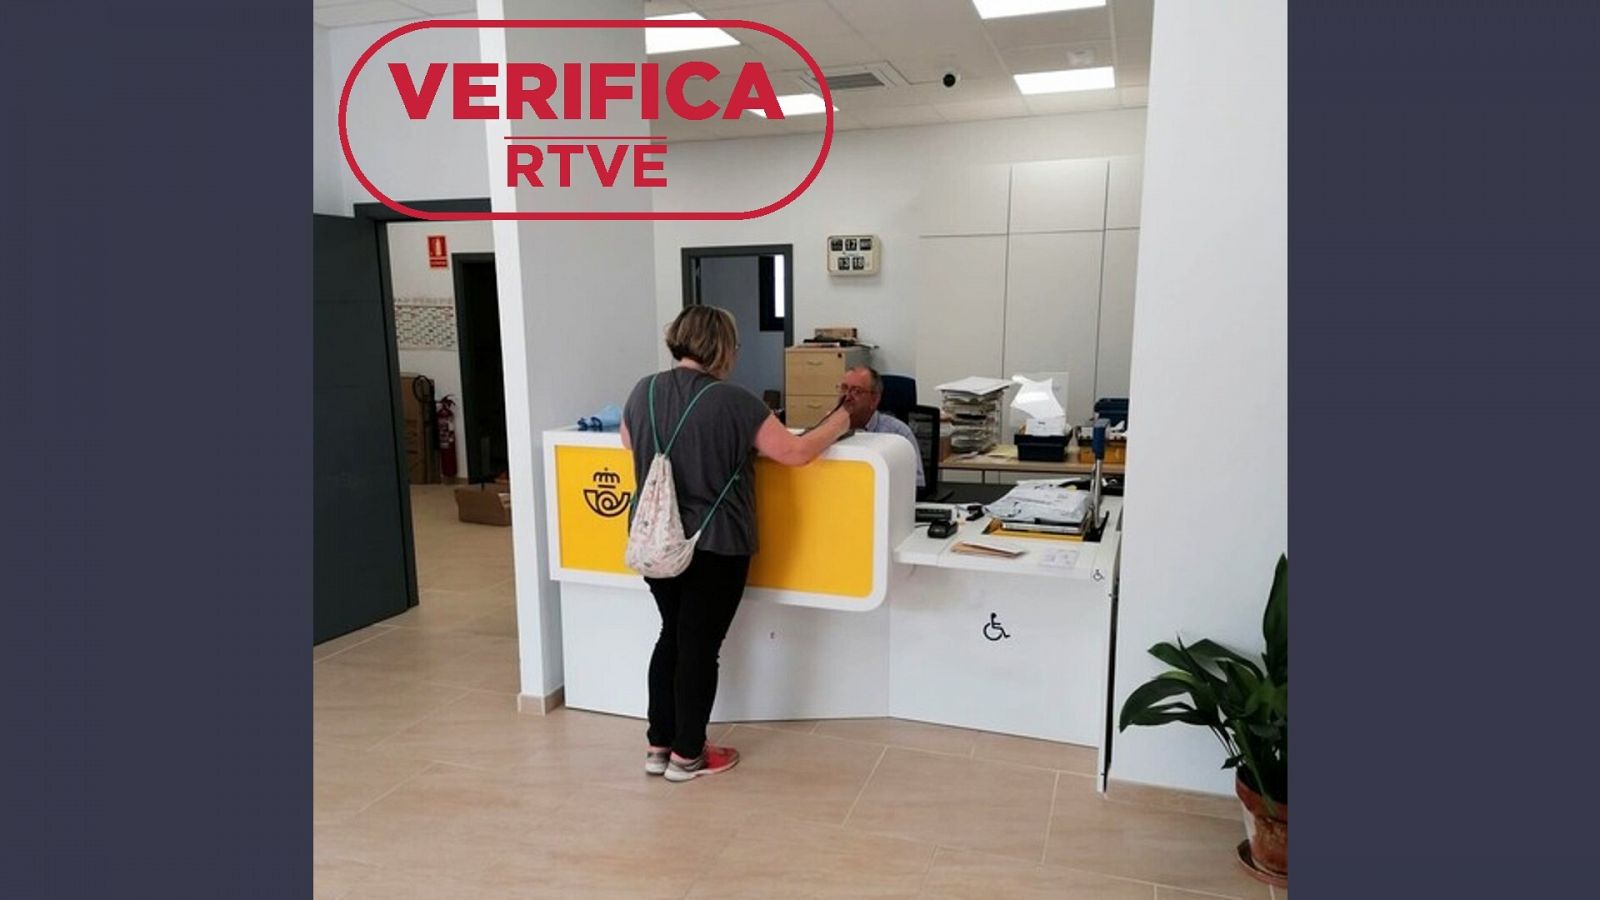 Te explicamos el procedimiento del voto por correo en España con sello: VerificaRTVE